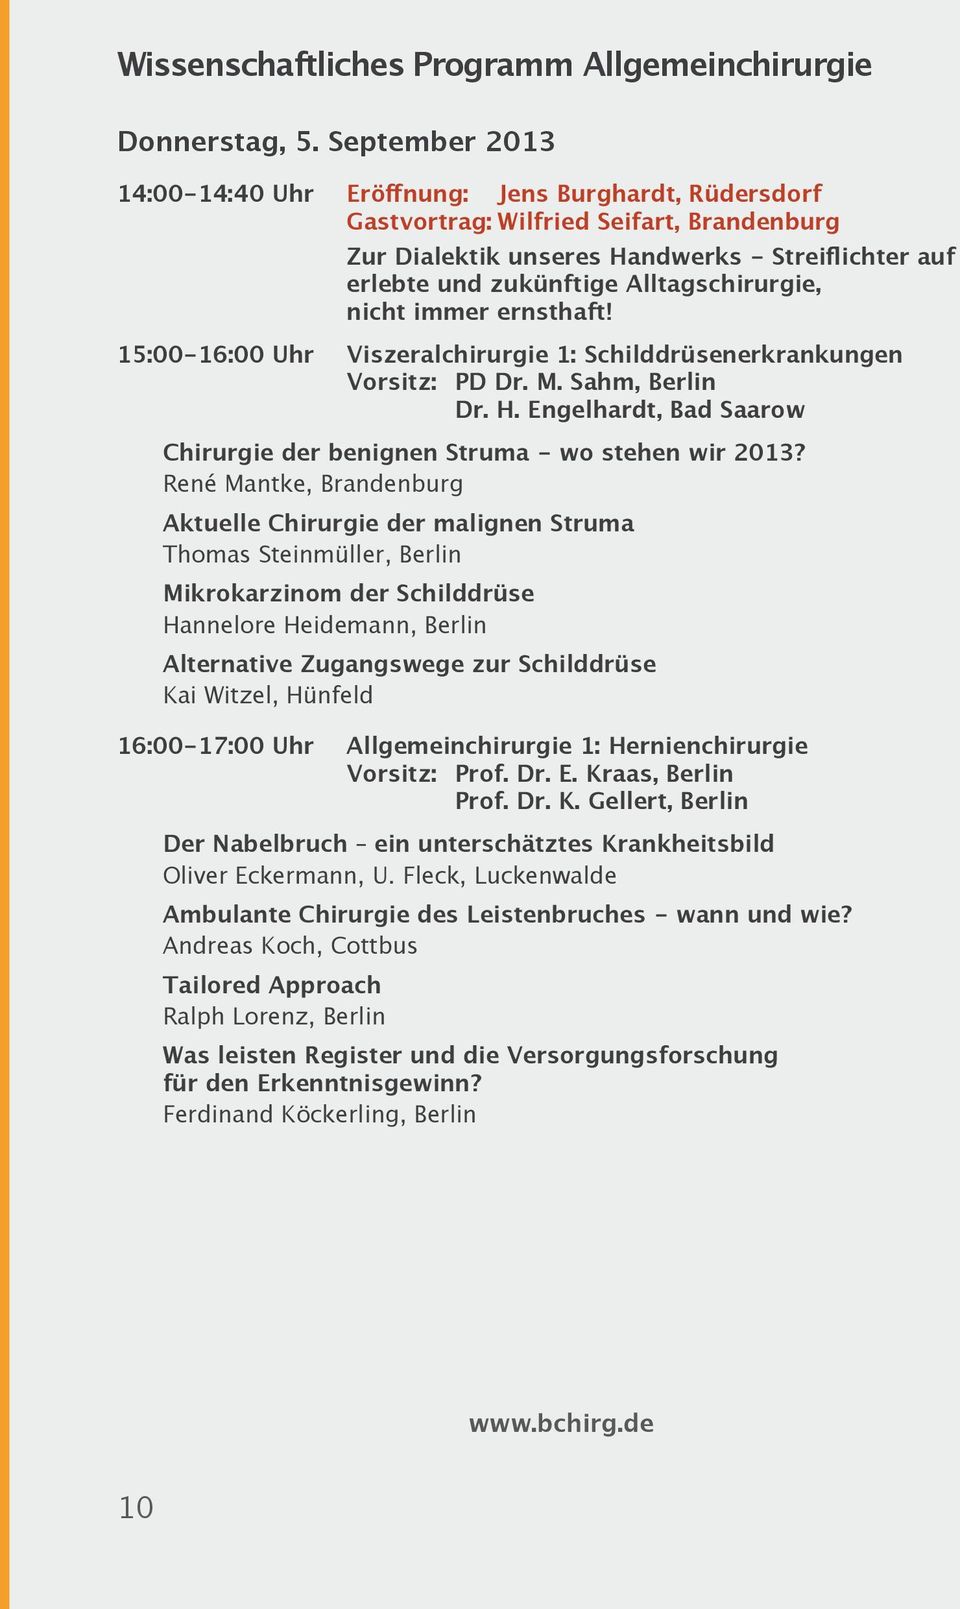 Alltagschirurgie, nicht immer ernsthaft! 15:00-16:00 Uhr Viszeralchirurgie 1: Schilddrüsenerkrankungen Vorsitz: PD Dr. M. Sahm, Berlin Dr. H.